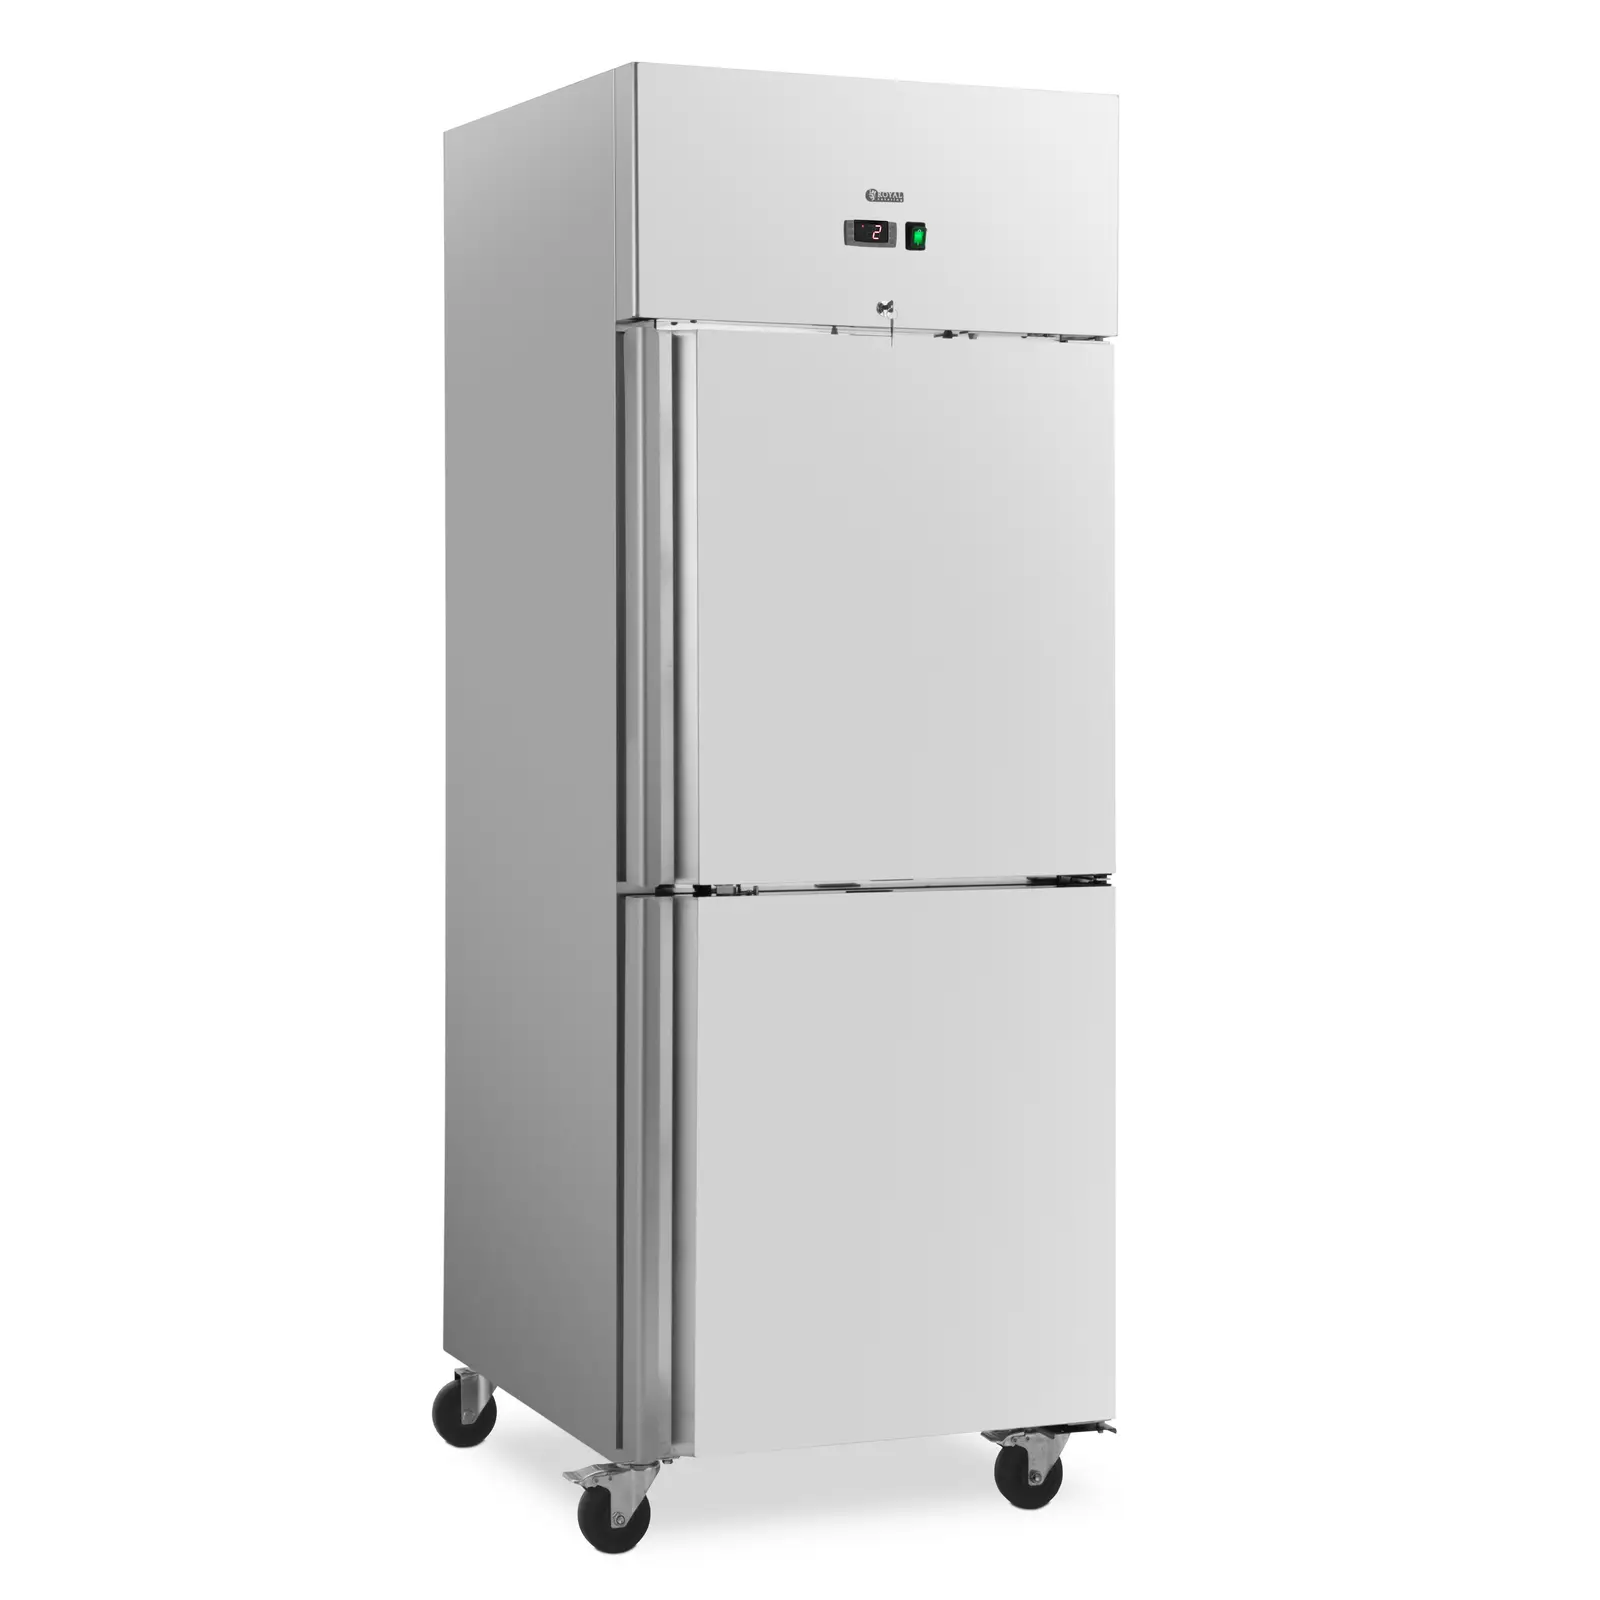 Poslovni hladnjak - 485 l - inox - 2 vrata - 4 kotačića - na zaključavanje - Royal Catering